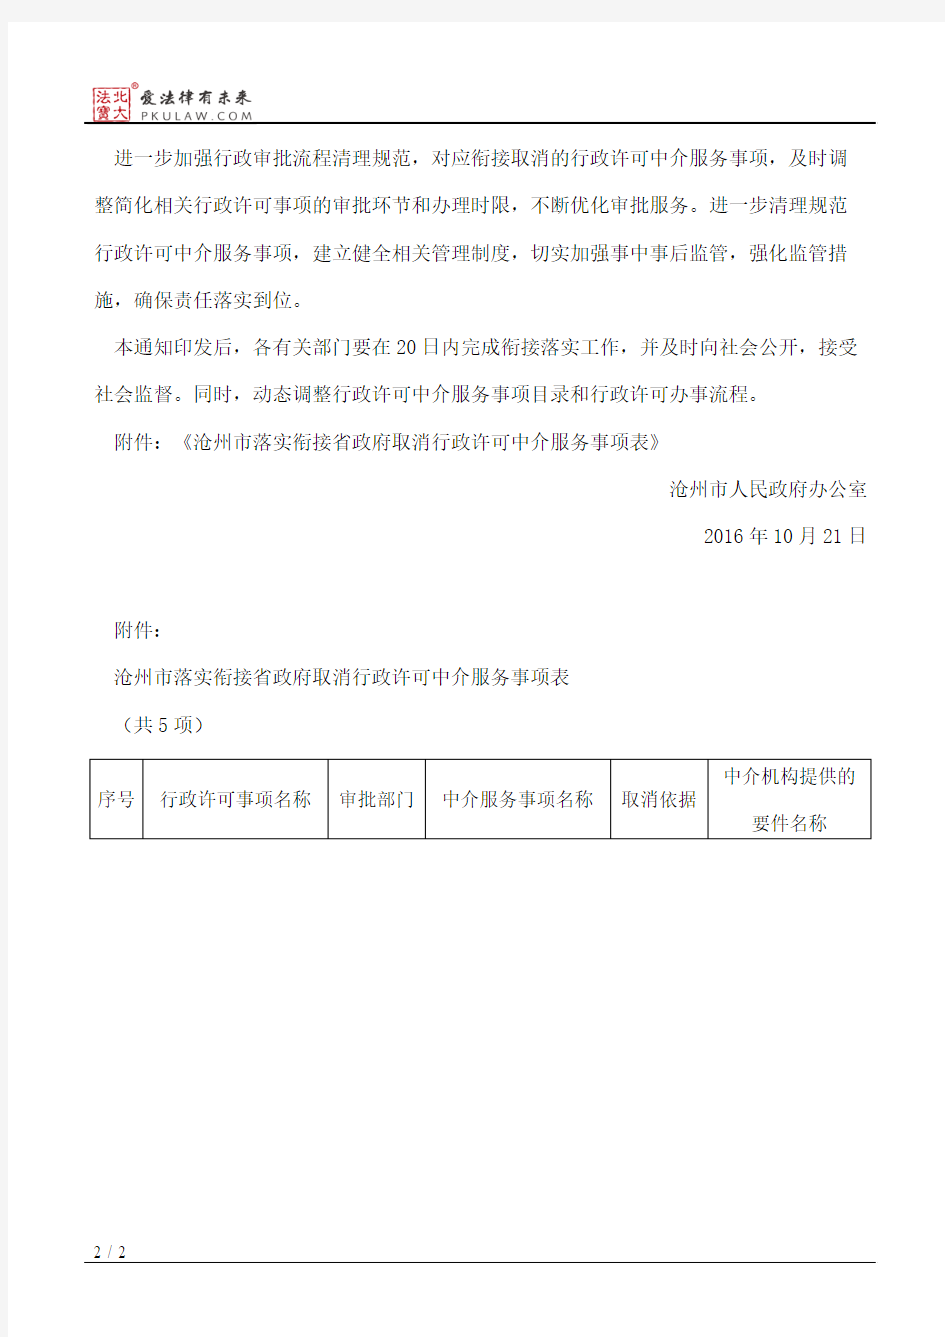 沧州市人民政府办公室关于落实省政府部门取消一批行政许可中介服